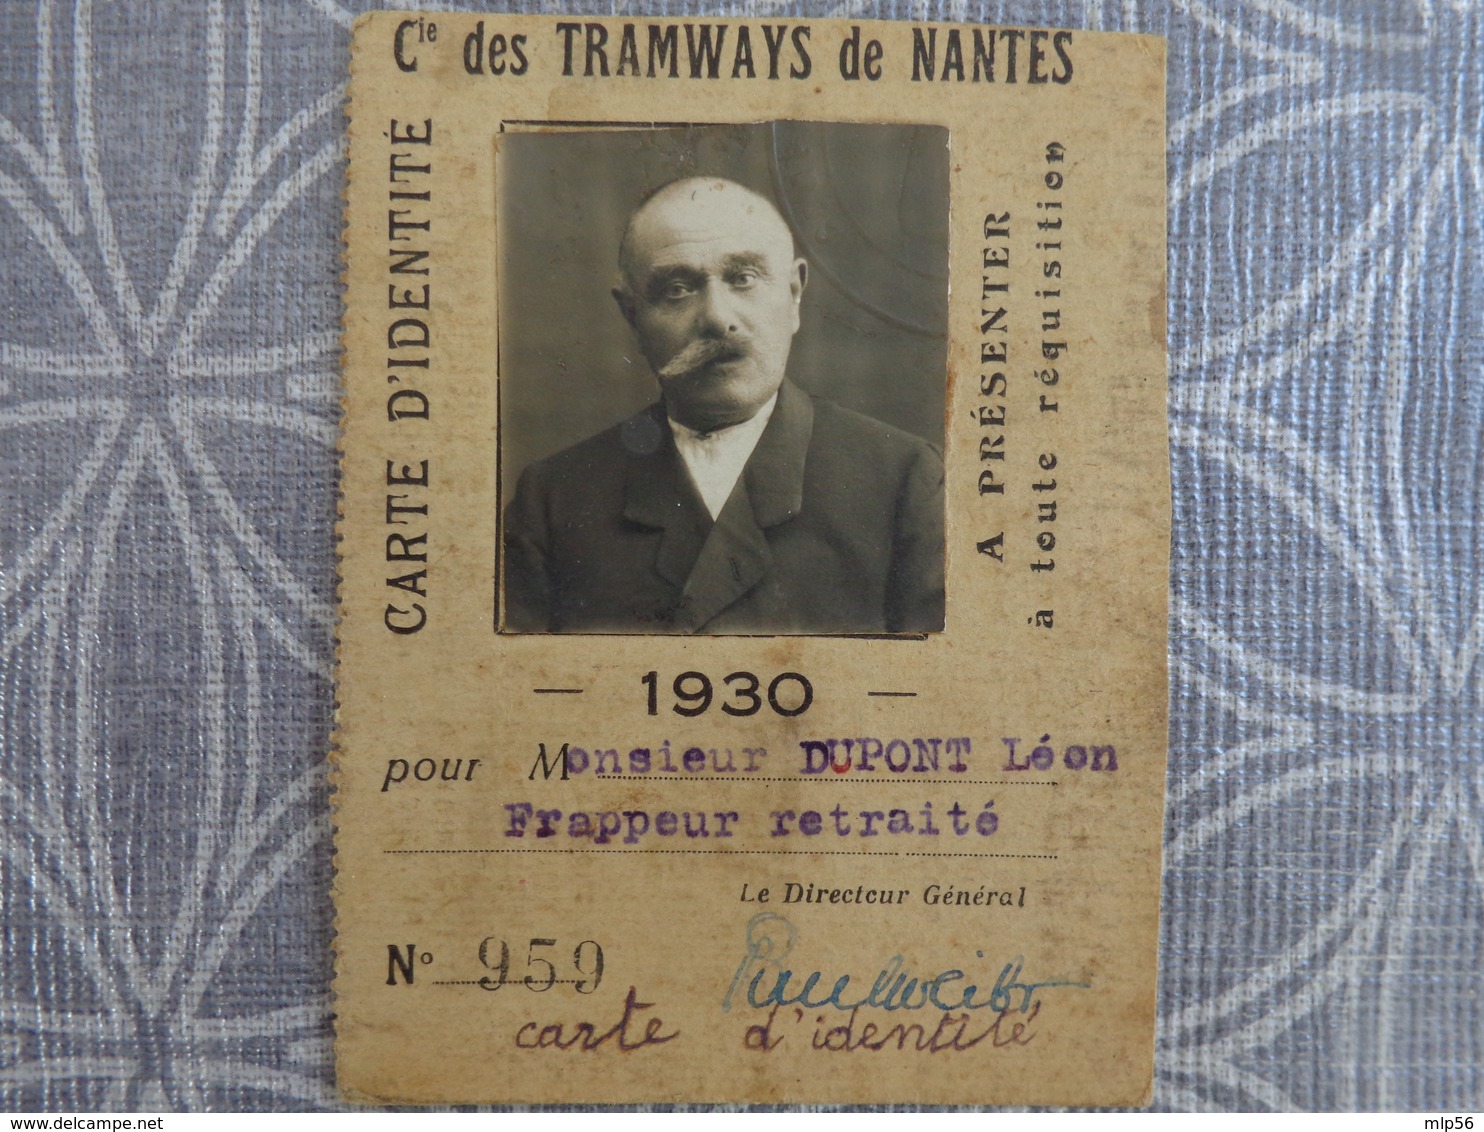 44 NANTES CARTE DE TRANSPORT DES COMPAGNIES DES TRAMWAYS DE NANTES DUPONT LEON FRAPPEUR RETRAITE 1930 - Non Classificati